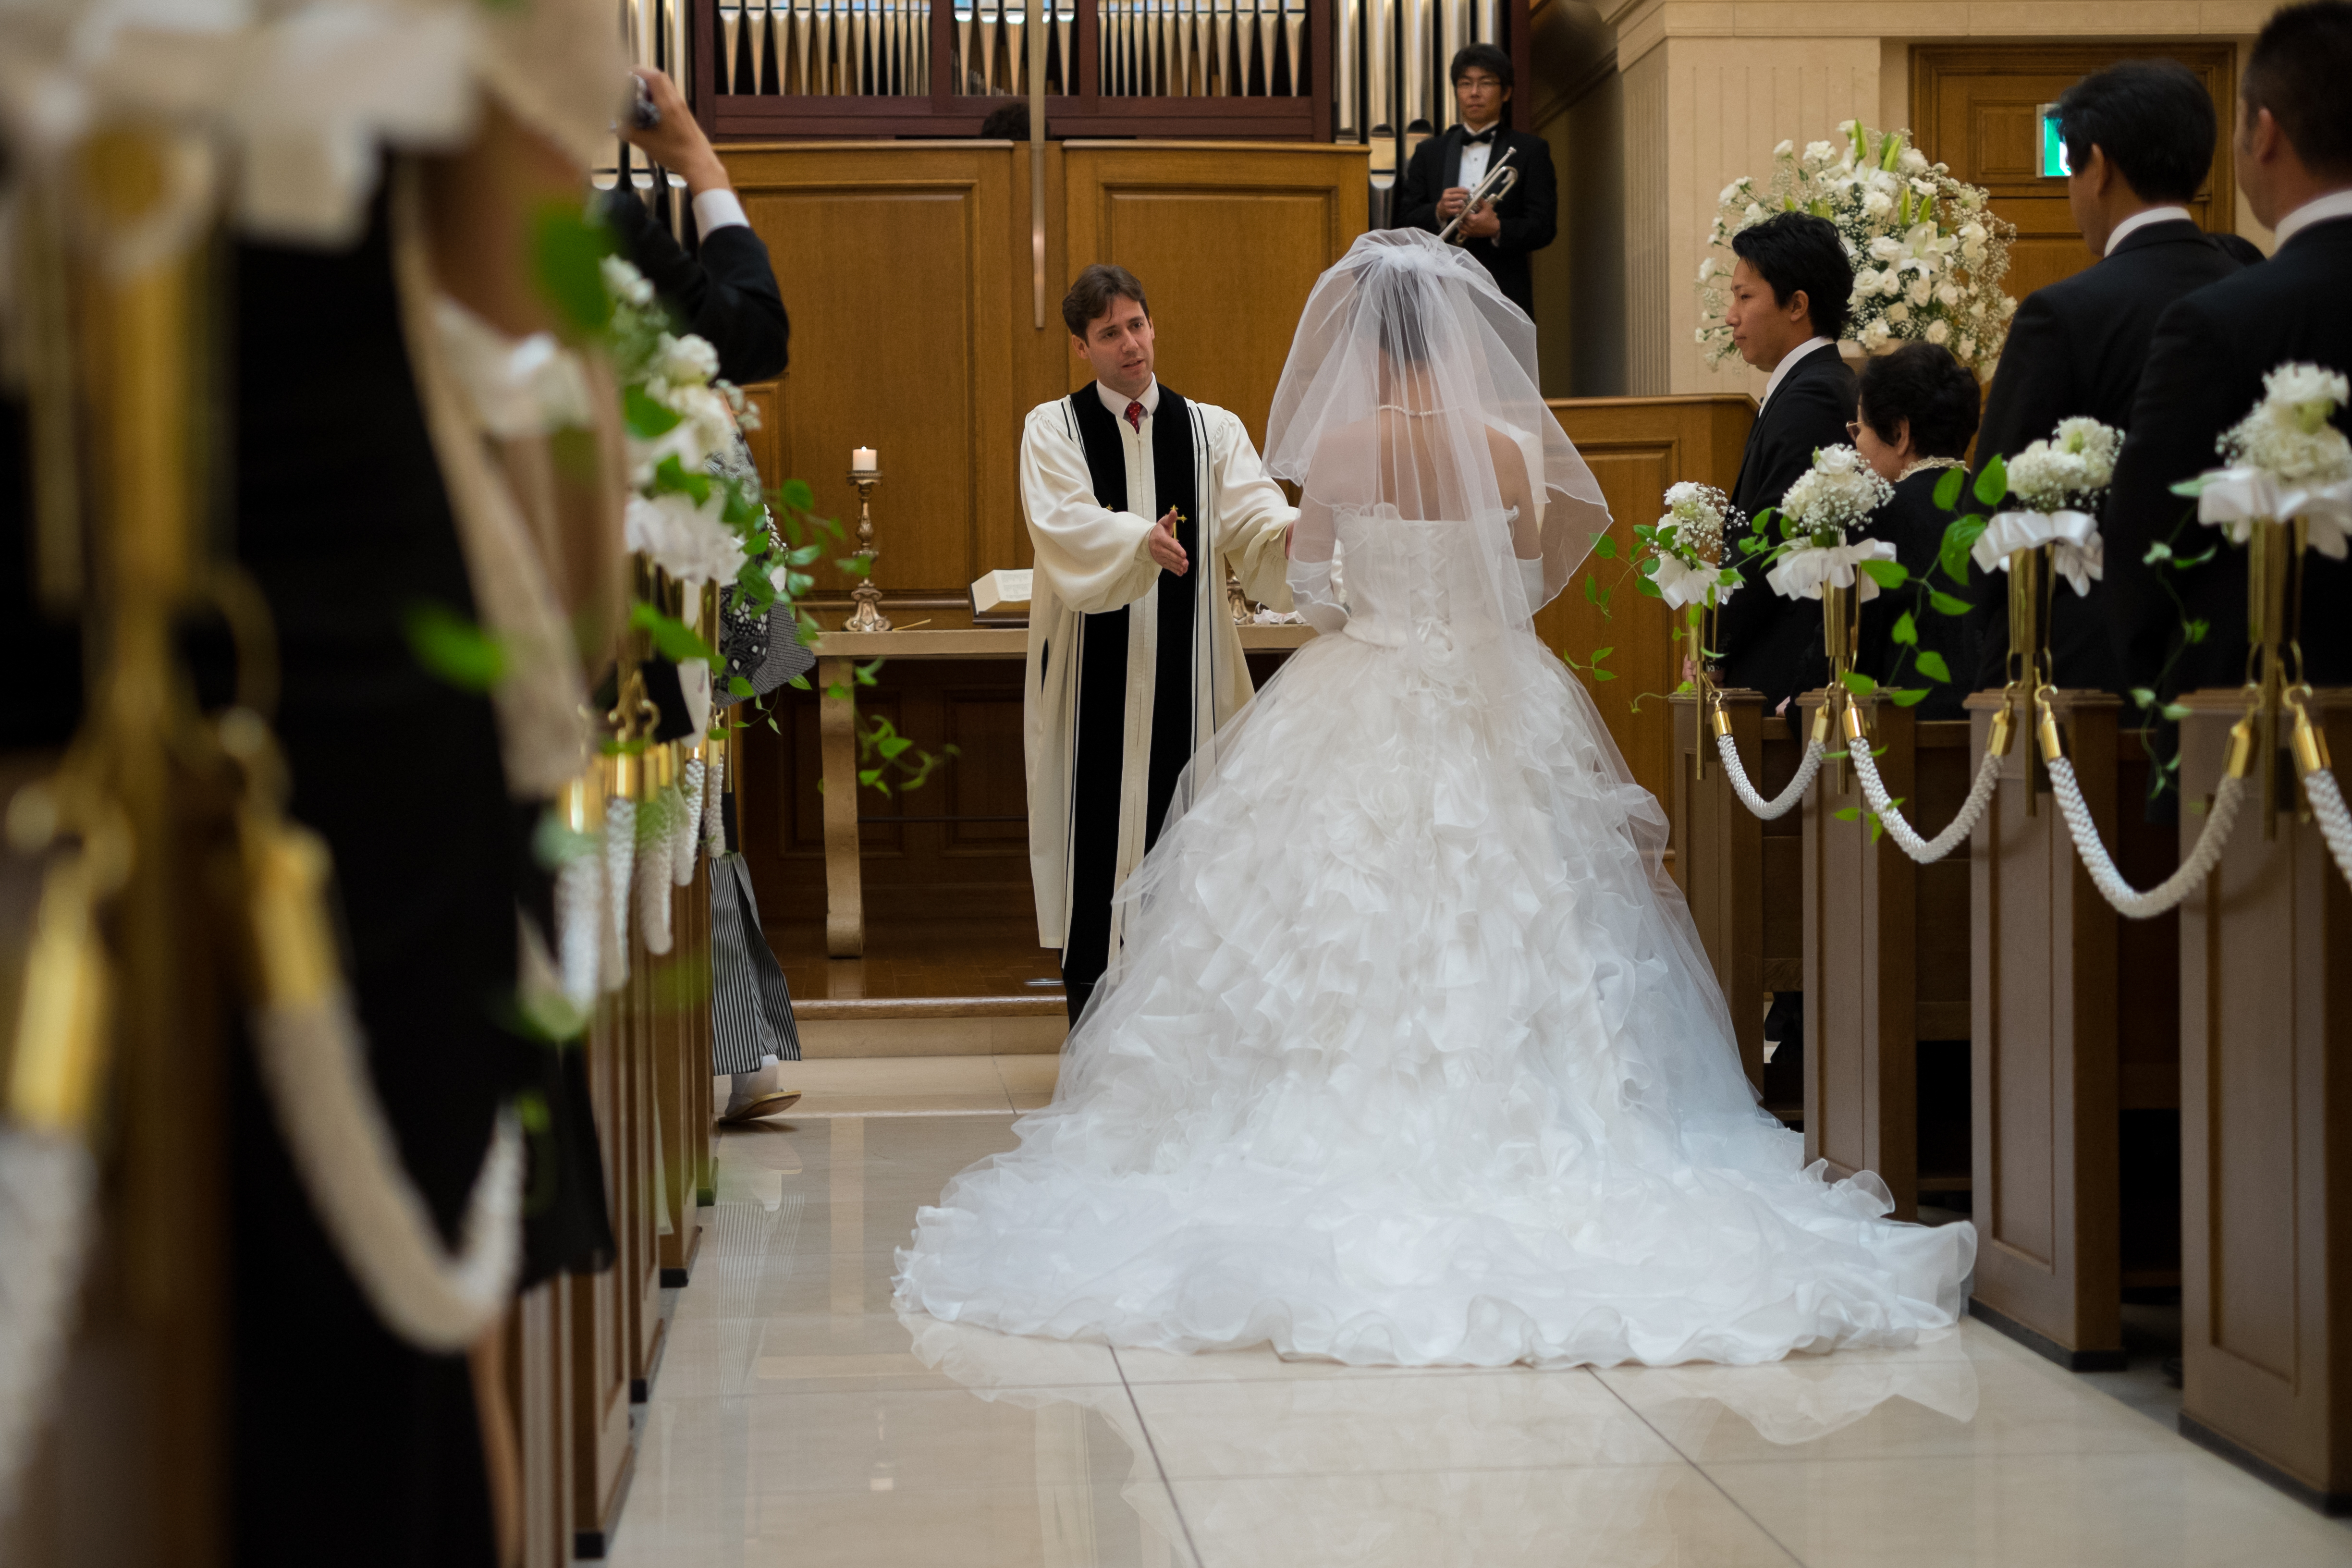 Un père bénit la mariée | Source : Shutterstock